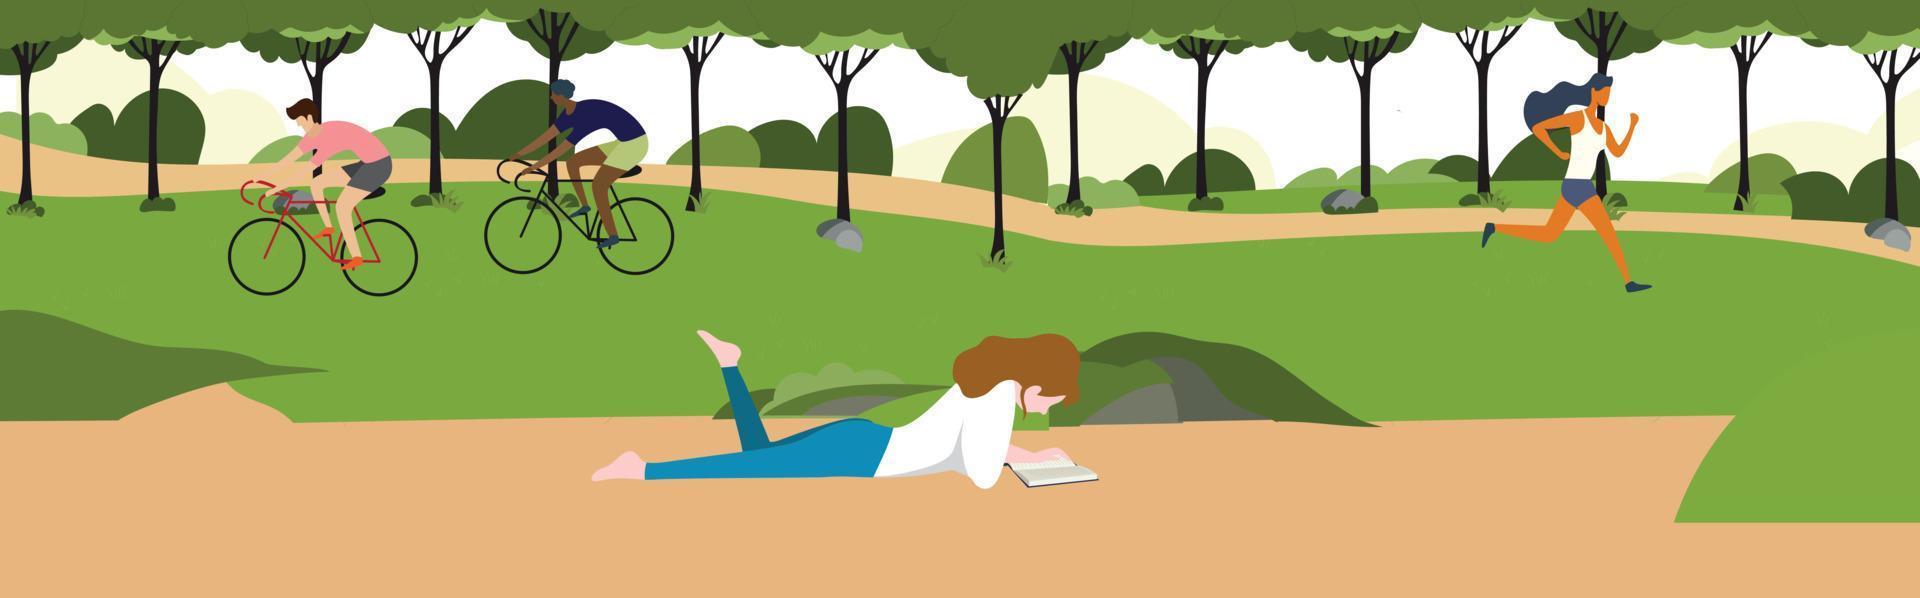 parque da cidade de manhã com mulheres sentadas na grama lendo um livro, estilo de vida da cidade de pessoas no verão vetor